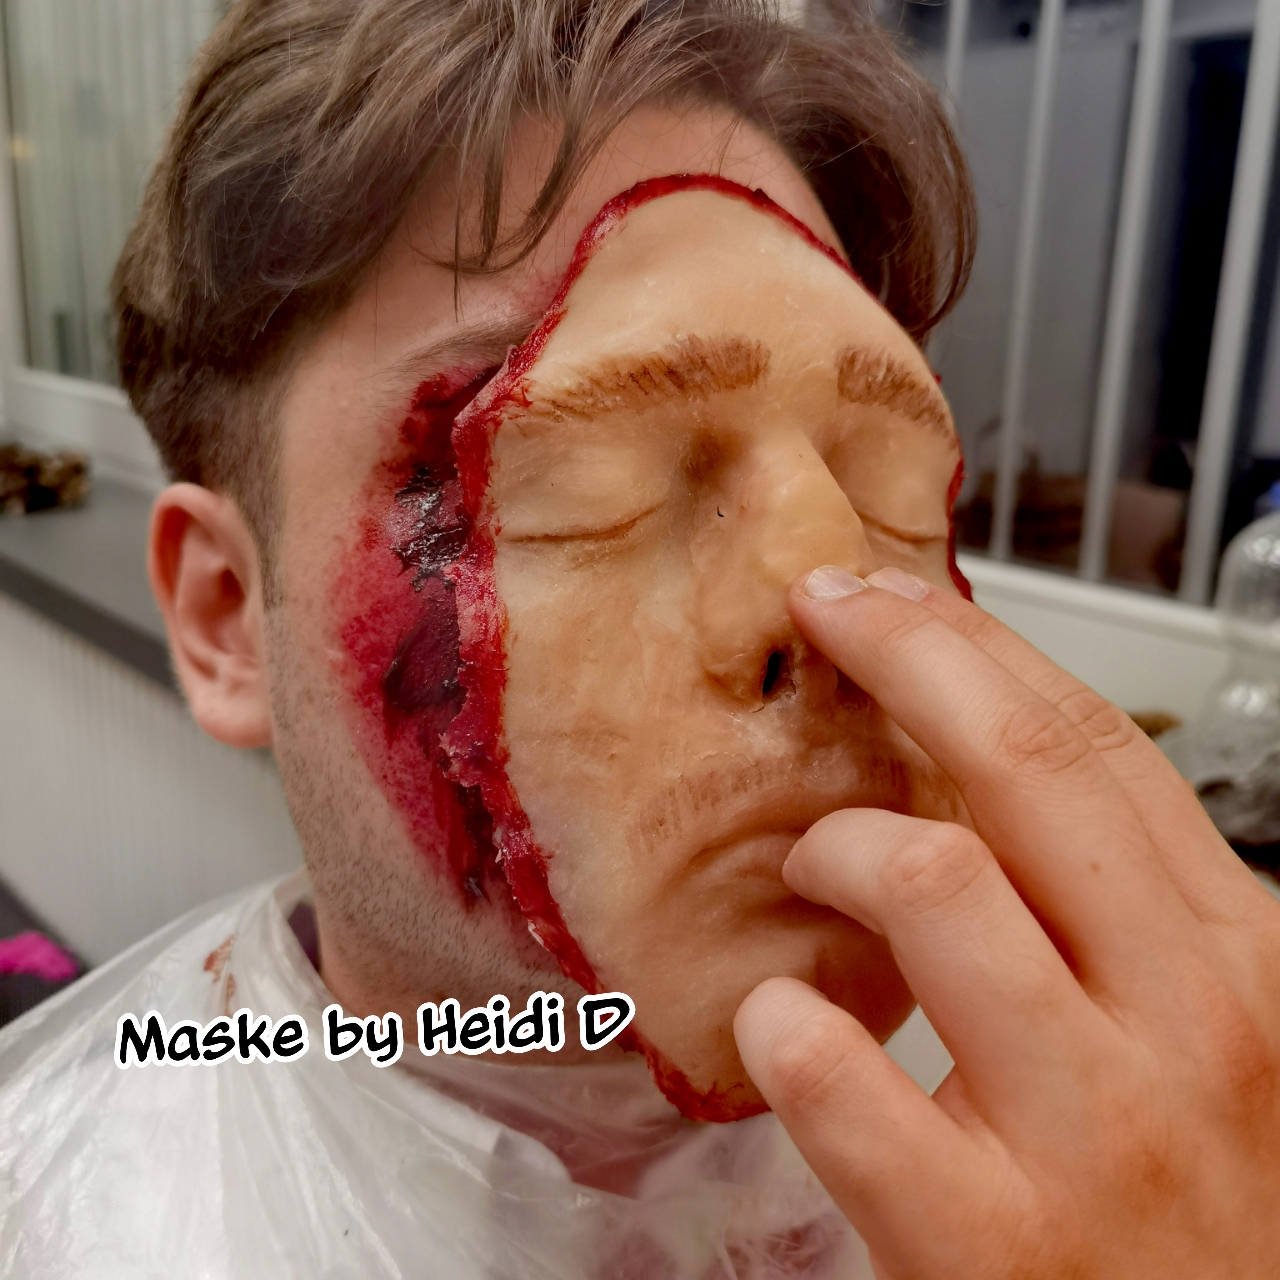 SXF Makeup, rausgerissenen Augen Wunden | Maskenbildnerin & Visagistin Heidi Debbah